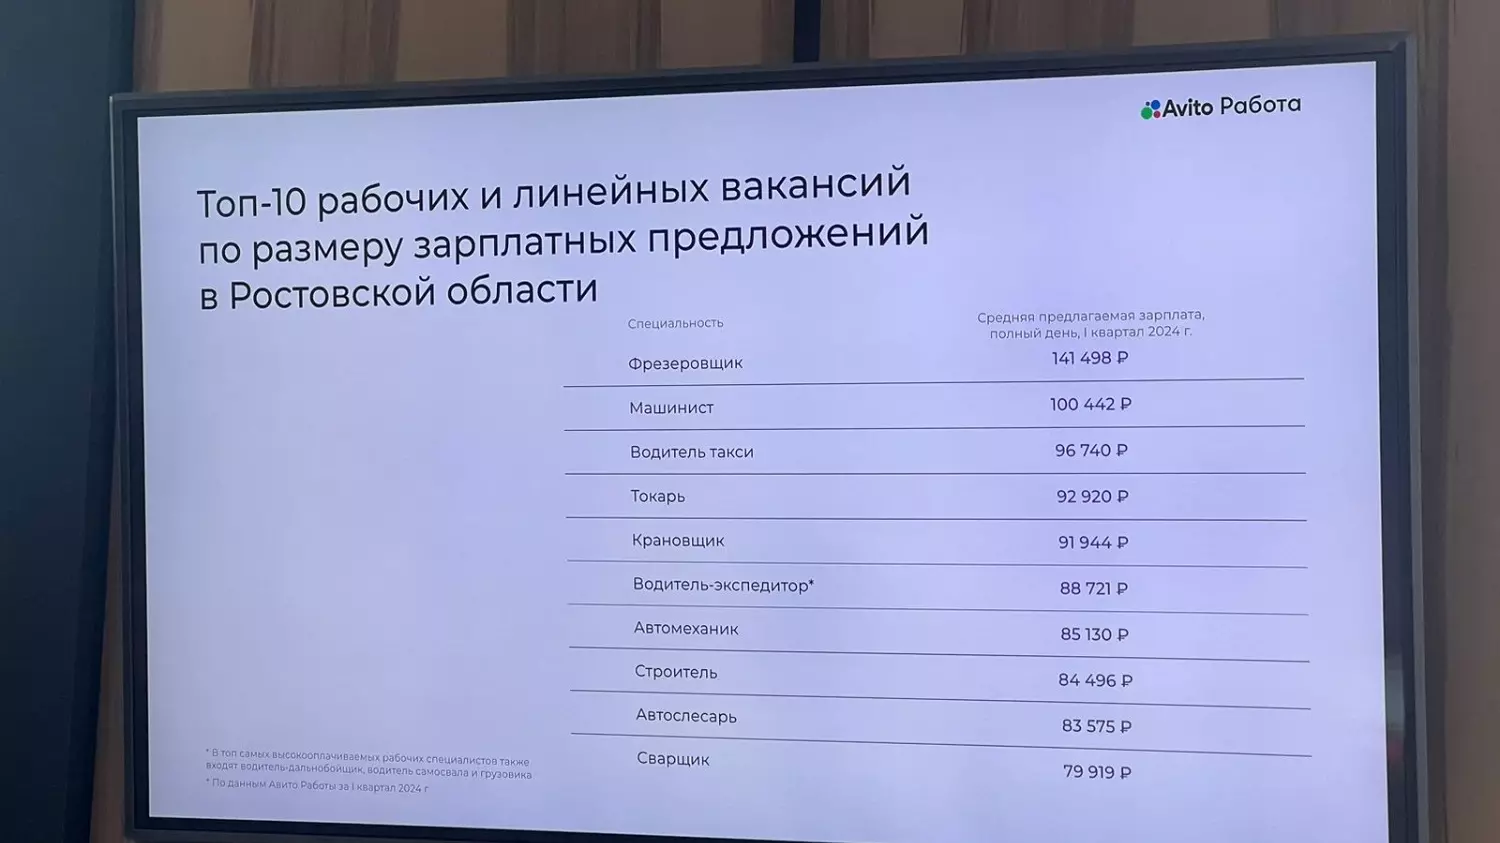 В сегменте рабочих и линейных вакансий самый большой доход предлагают фрезеровщикам — 141 489 рублей.